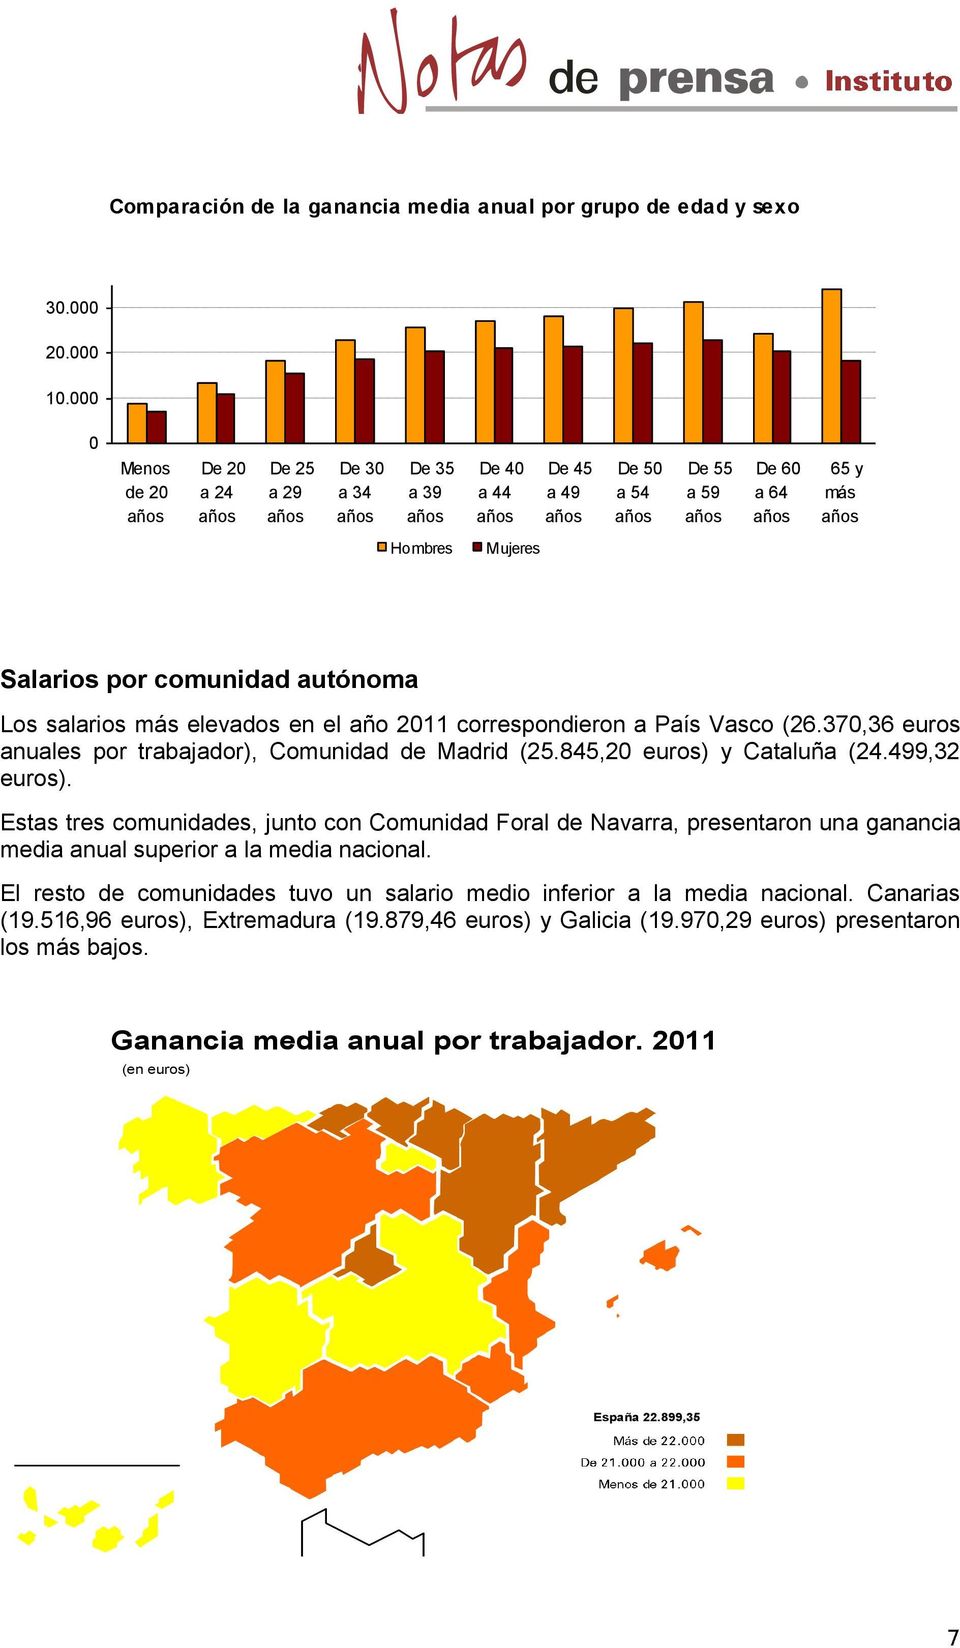 en el año 2011 correspondieron a País Vasco (26.370,36 euros es por trabajador), Comunidad de Madrid (25.845,20 euros) y Cataluña (24.499,32 euros).